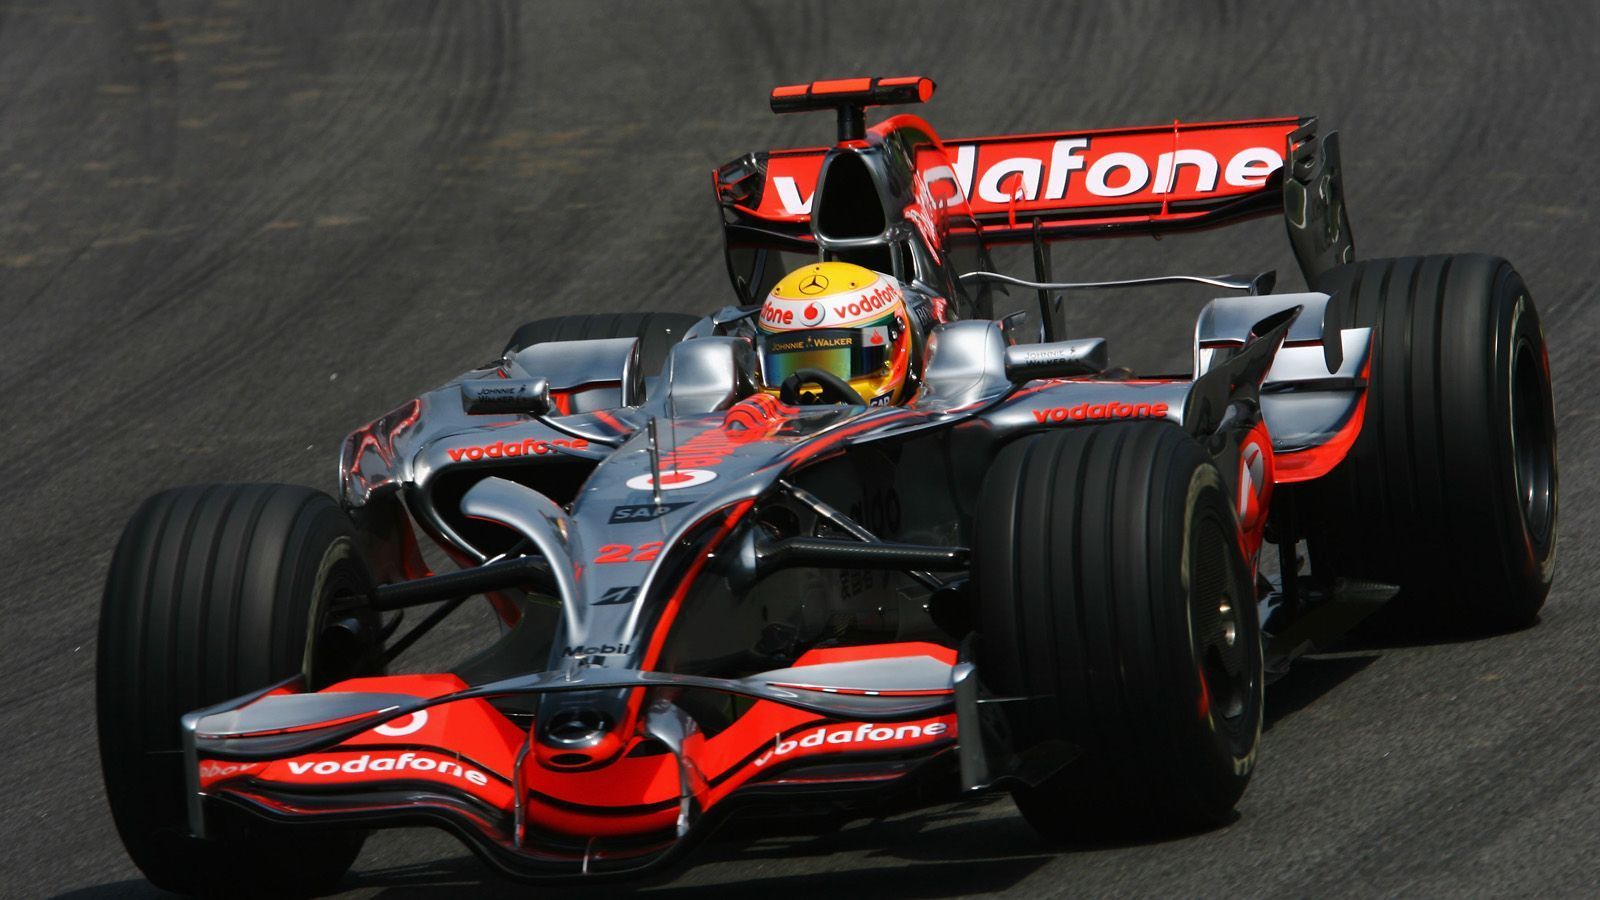 
                <strong>Mc Laren Mercedes (2008)  </strong><br>
                Auf den Boliden wurden immer mehr Zusatzflügel verbaut, so wie hier am McLaren Mercedes von Lewis Hamilton im Jahr 2008. Nahezu gleich blieben im Vergleich zum Beginn der 2000er der breite Front- und schmale Heckflügel. 
              